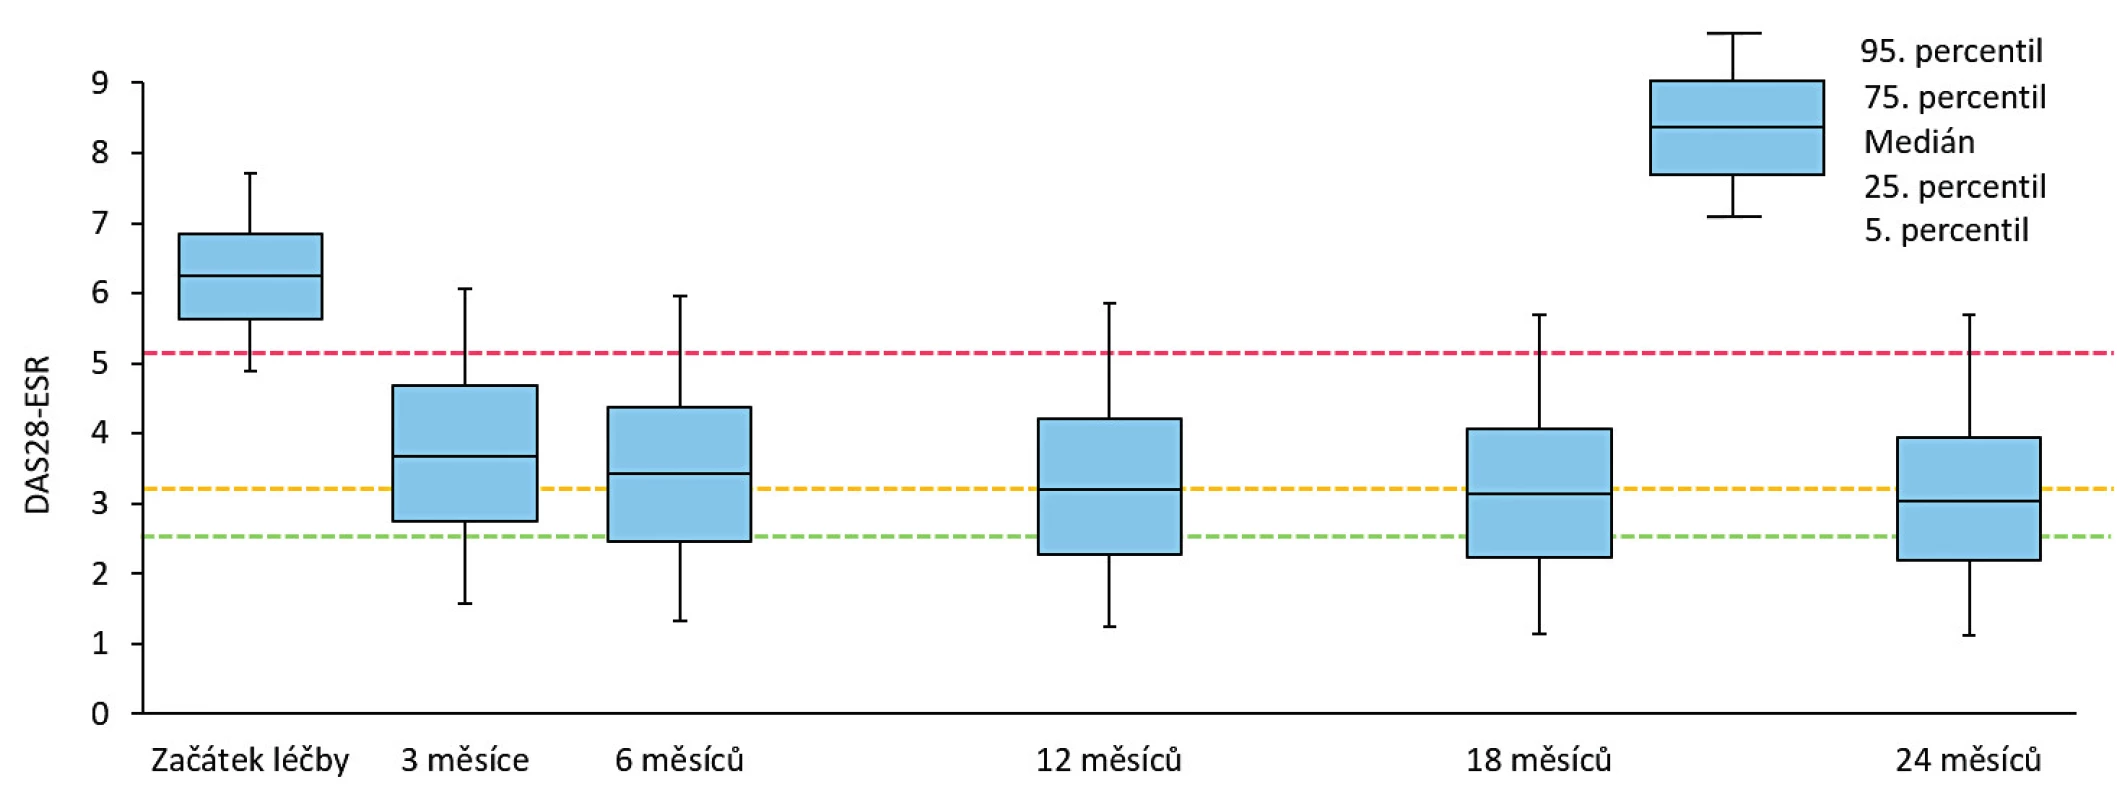 Vývoj DAS 28 skóre během 2 let léčby; červená přerušovaná čára znázorňuje hranici pro vysokou aktivitu (DAS 28 > 5,1), žlutá
přerušovaná čára představuje hranici pro nízkou aktivitu onemocnění (DAS 28 ≤ 3,2) a zelená přerušovaná čára reprezentuje hranici
remise (DAS 28 < 2,6) 